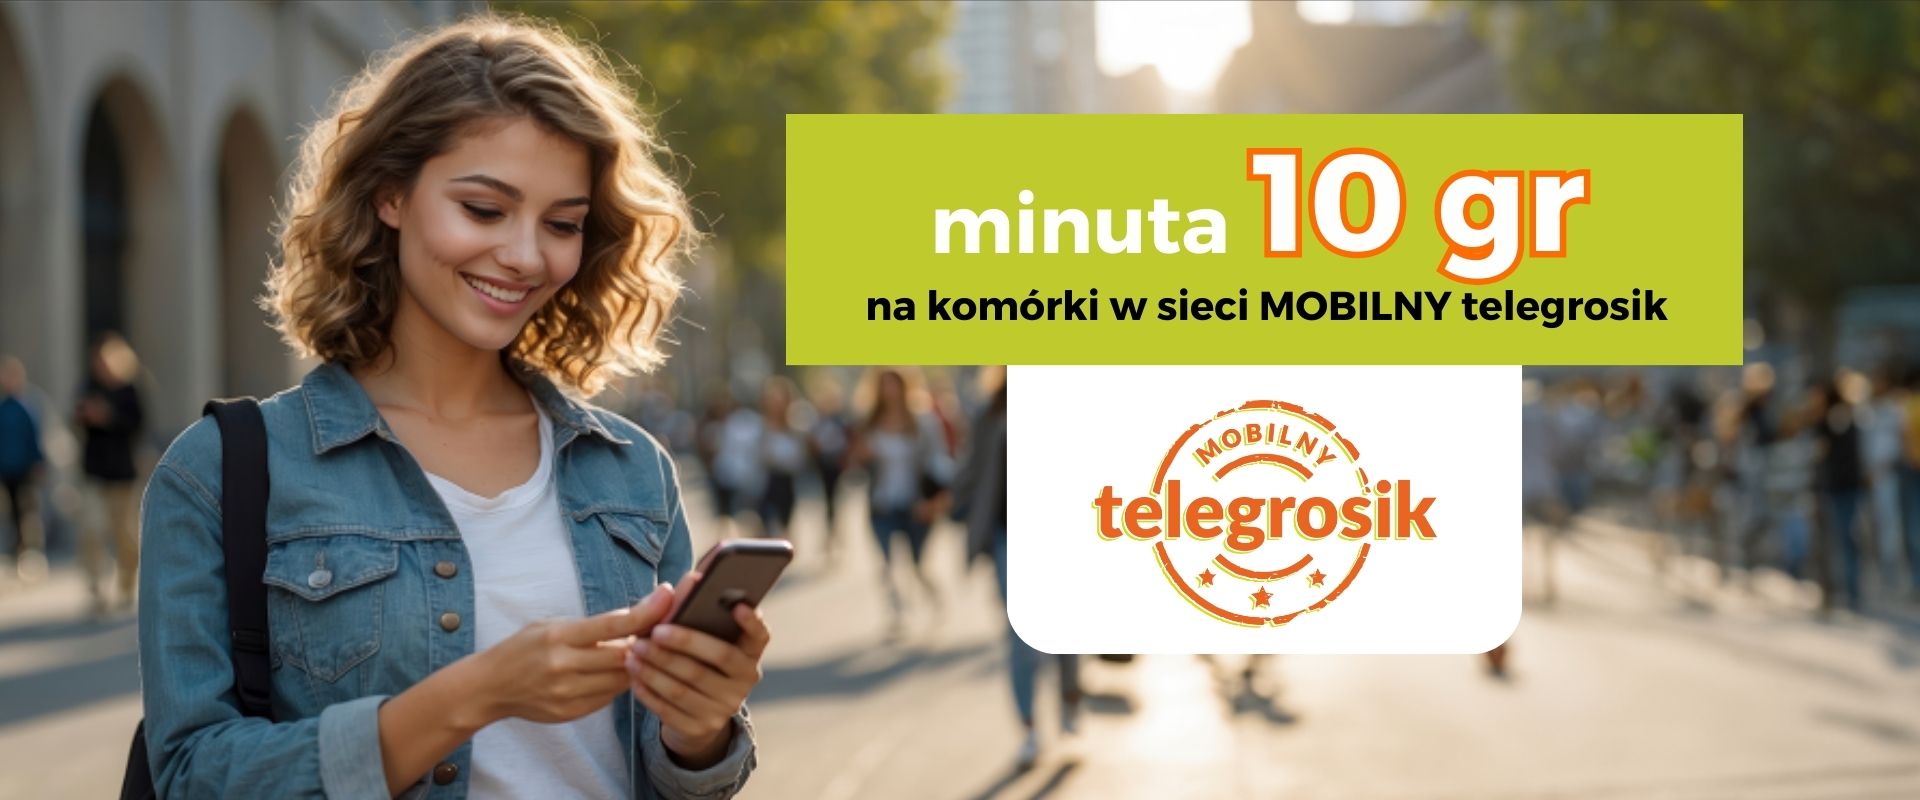 Dzwoń za 10 gr/min z karty telegrosik na komórki w sieci MOBILNY telegrosik